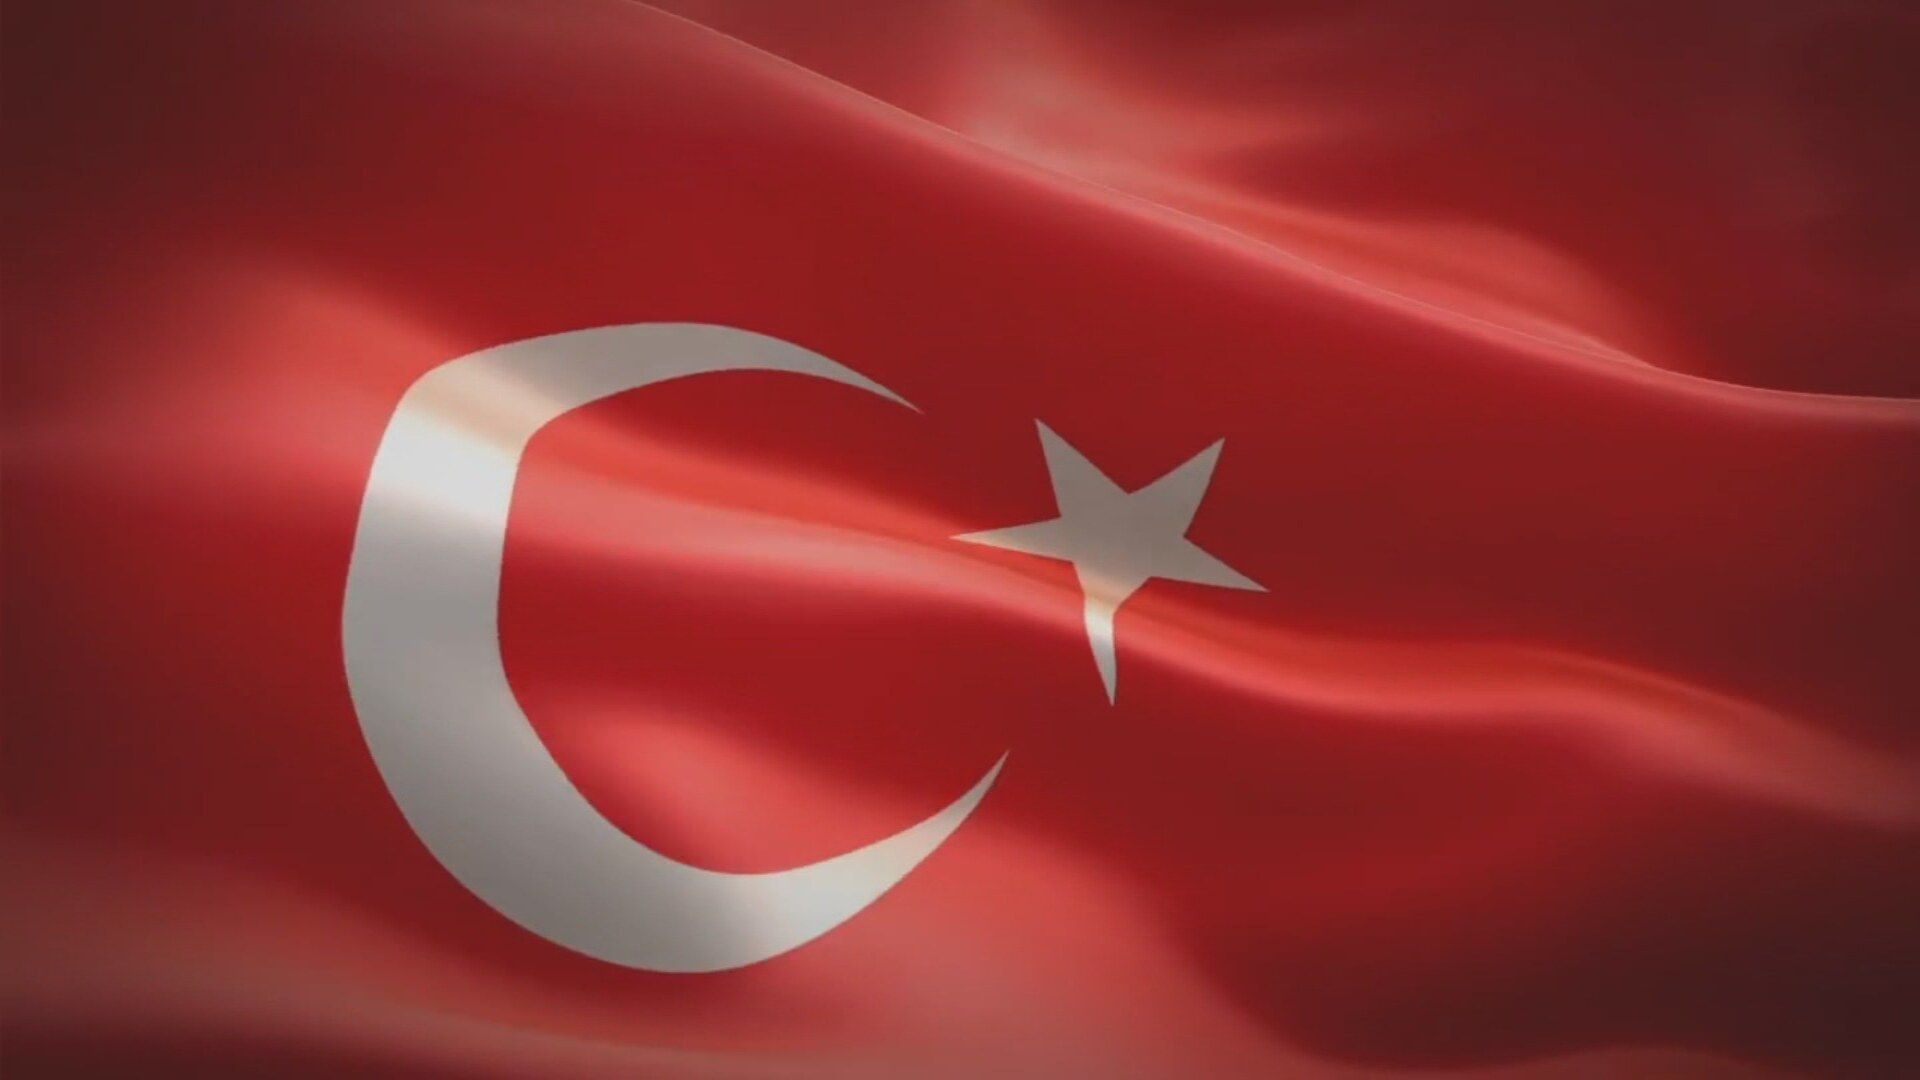 ay yildiz turk bayragi 2